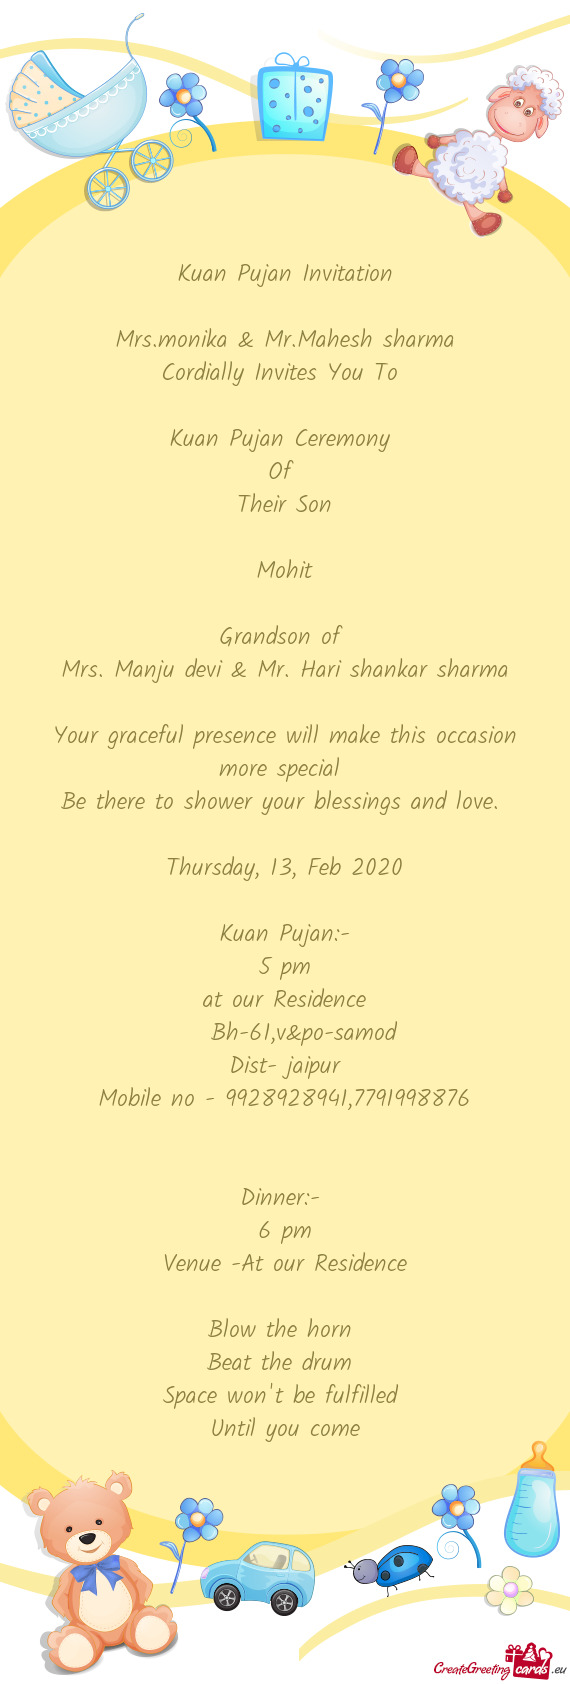 Mrs. Manju devi & Mr. Hari shankar sharma